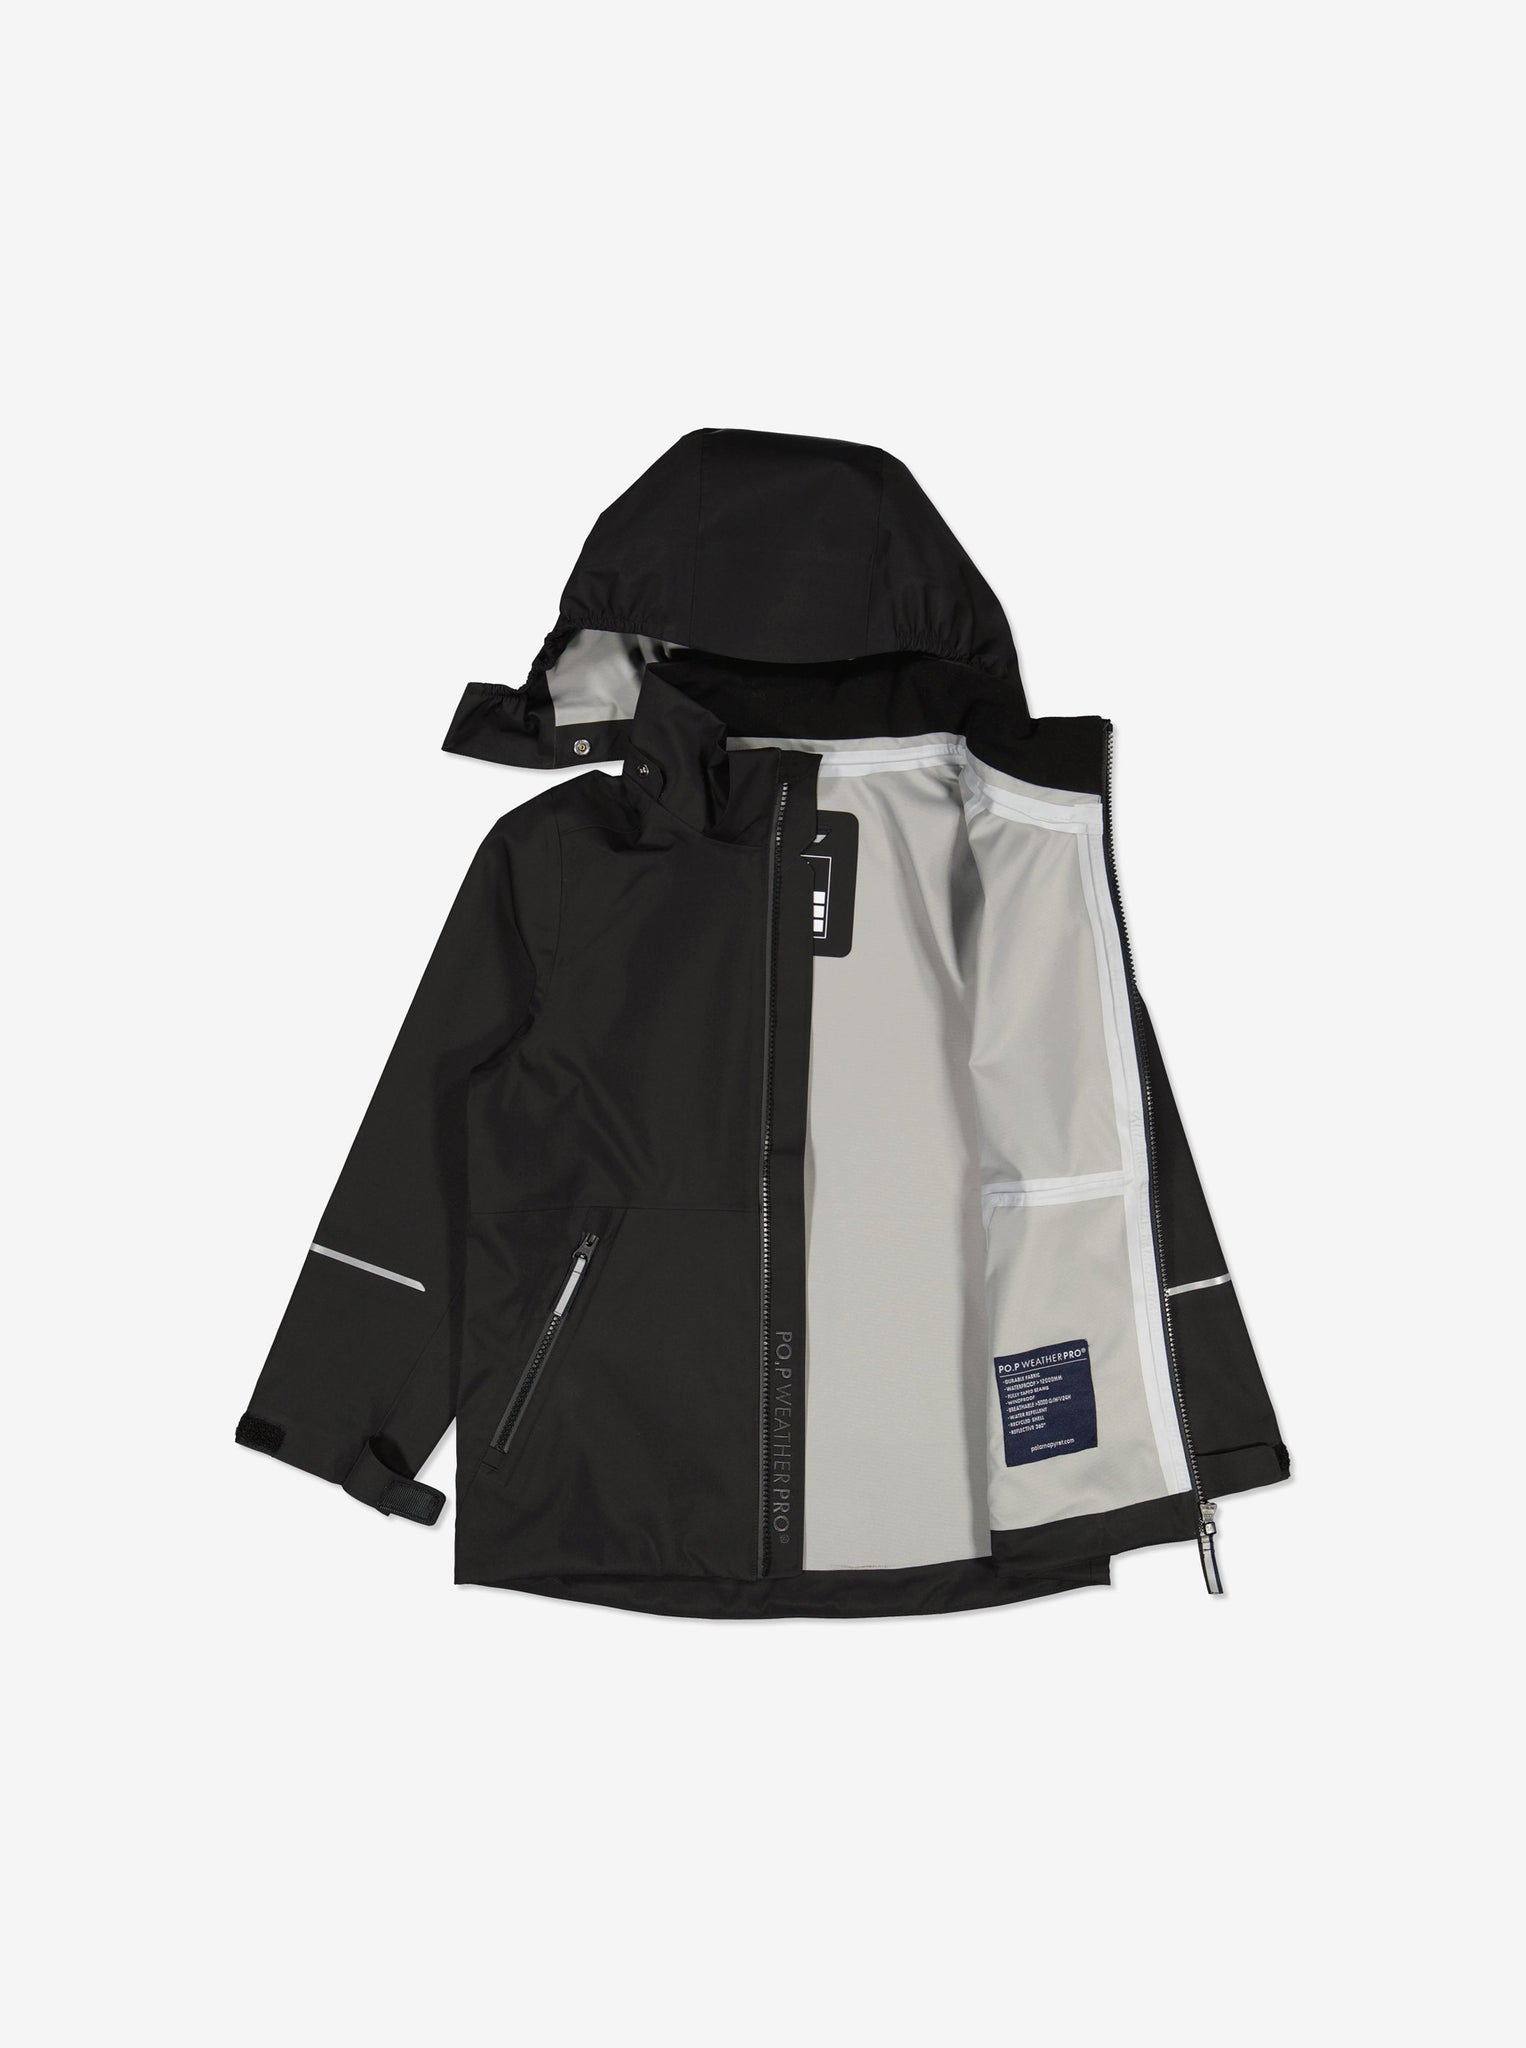 Black Waterproof Kids Jacket from Polarn O. Pyret Kidswear. Waterproof Kids Jacket